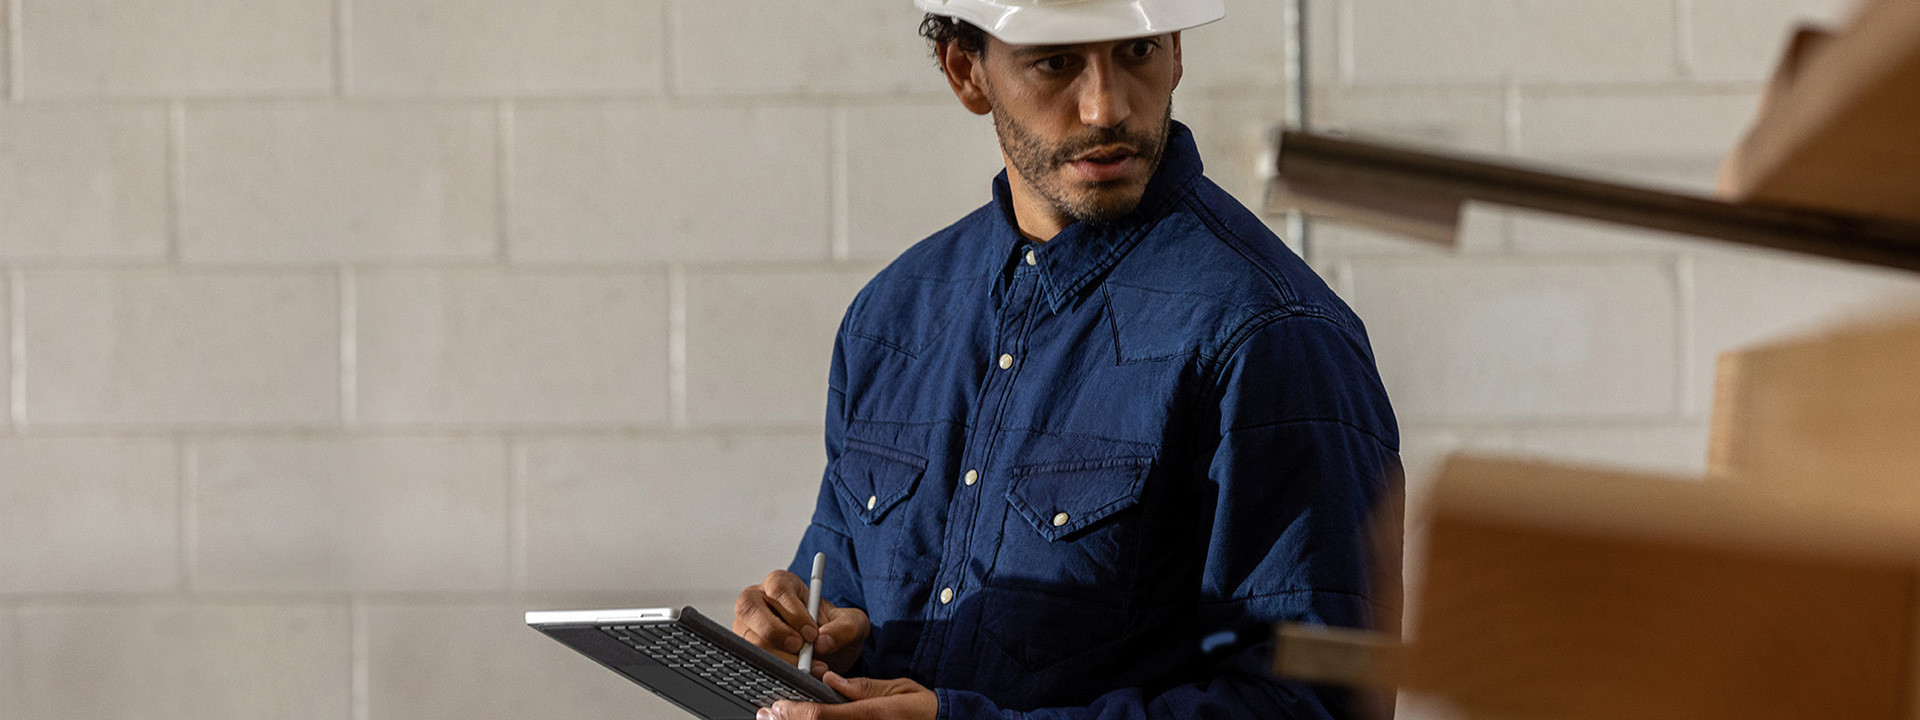 พนักงานคนหนึ่งที่สวมหมวกนิรภัยในโรงงานอุตสาหกรรม ถือ Surface Go 2 ในโหมดแท็บเล็ต